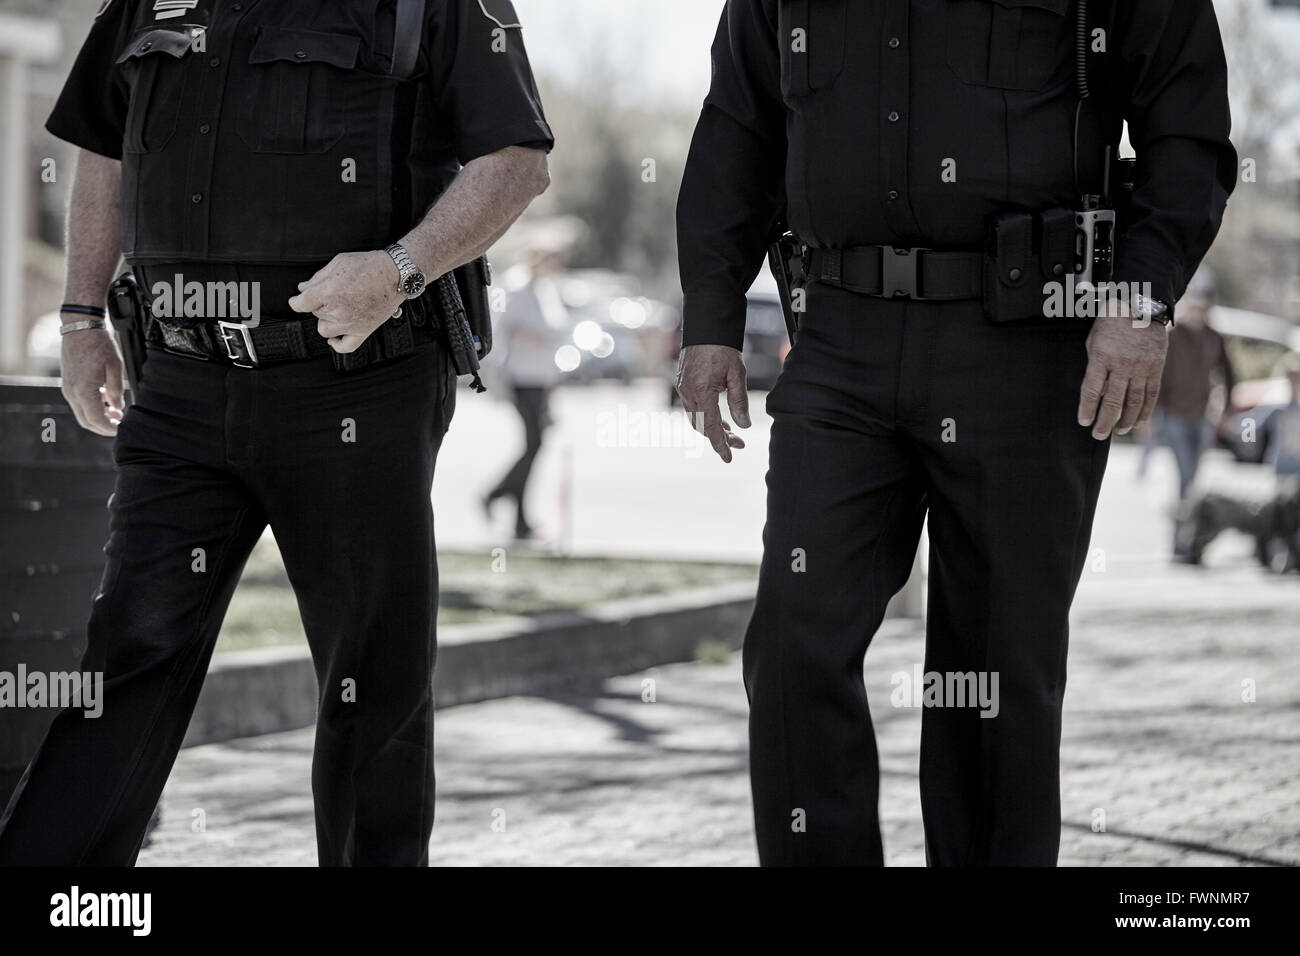 Oficial de policía encargados de hacer cumplir la ley sobre la guardia de patrulla en uniforme con armas Foto de stock